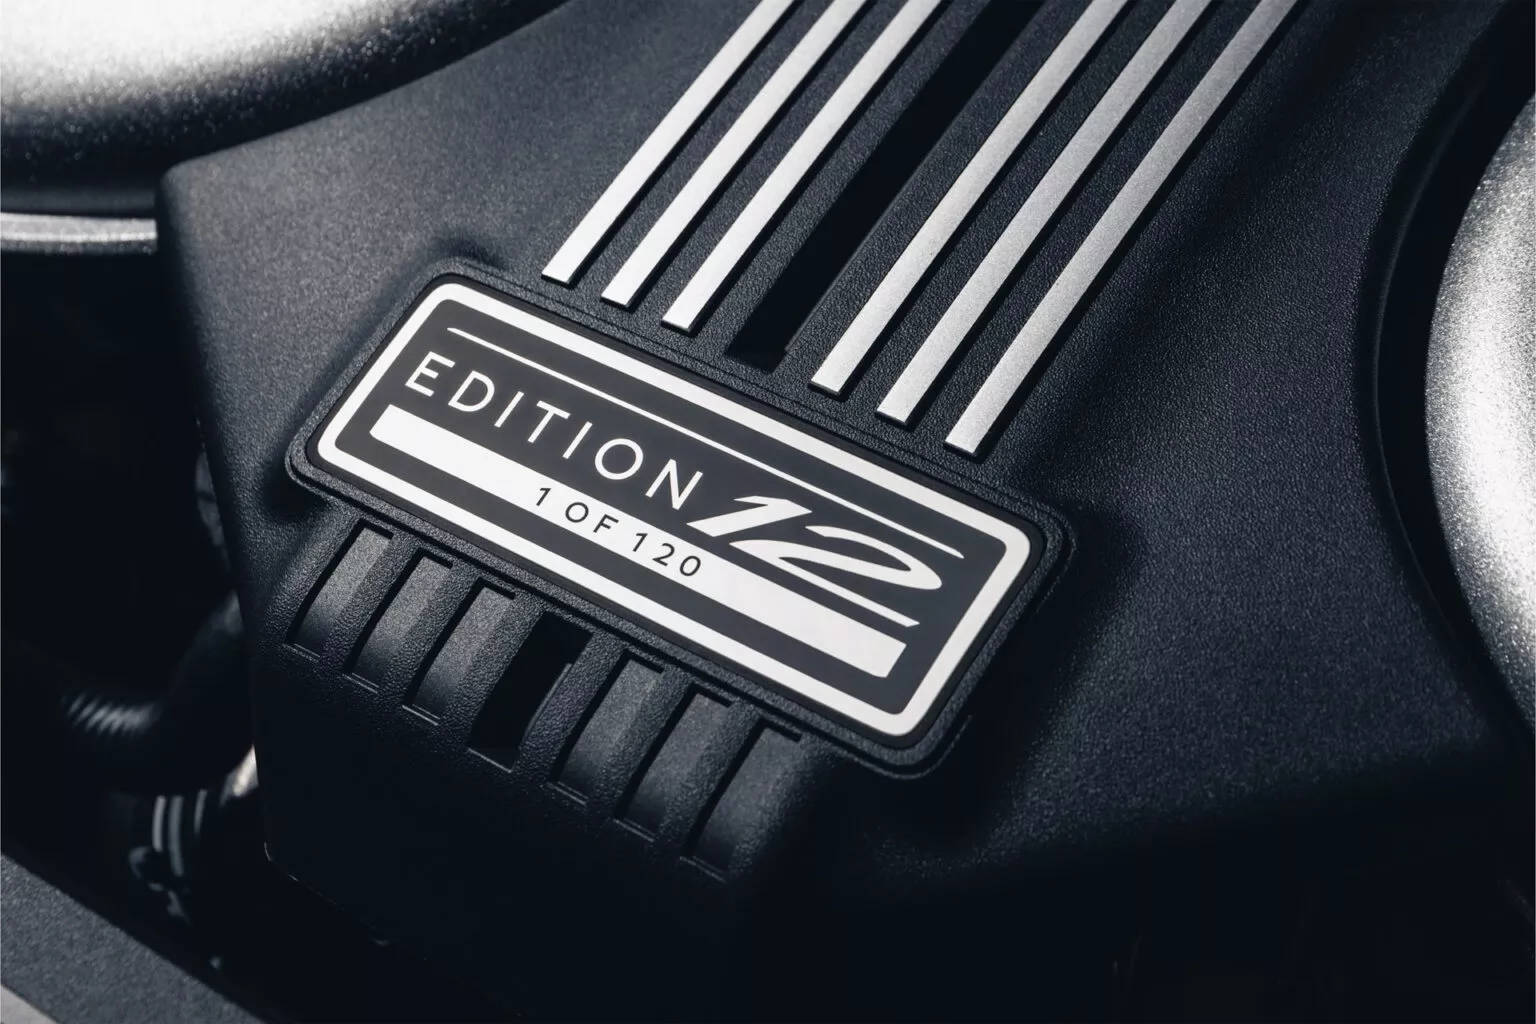 Bentley-Speed-Edition-12-17.jpg